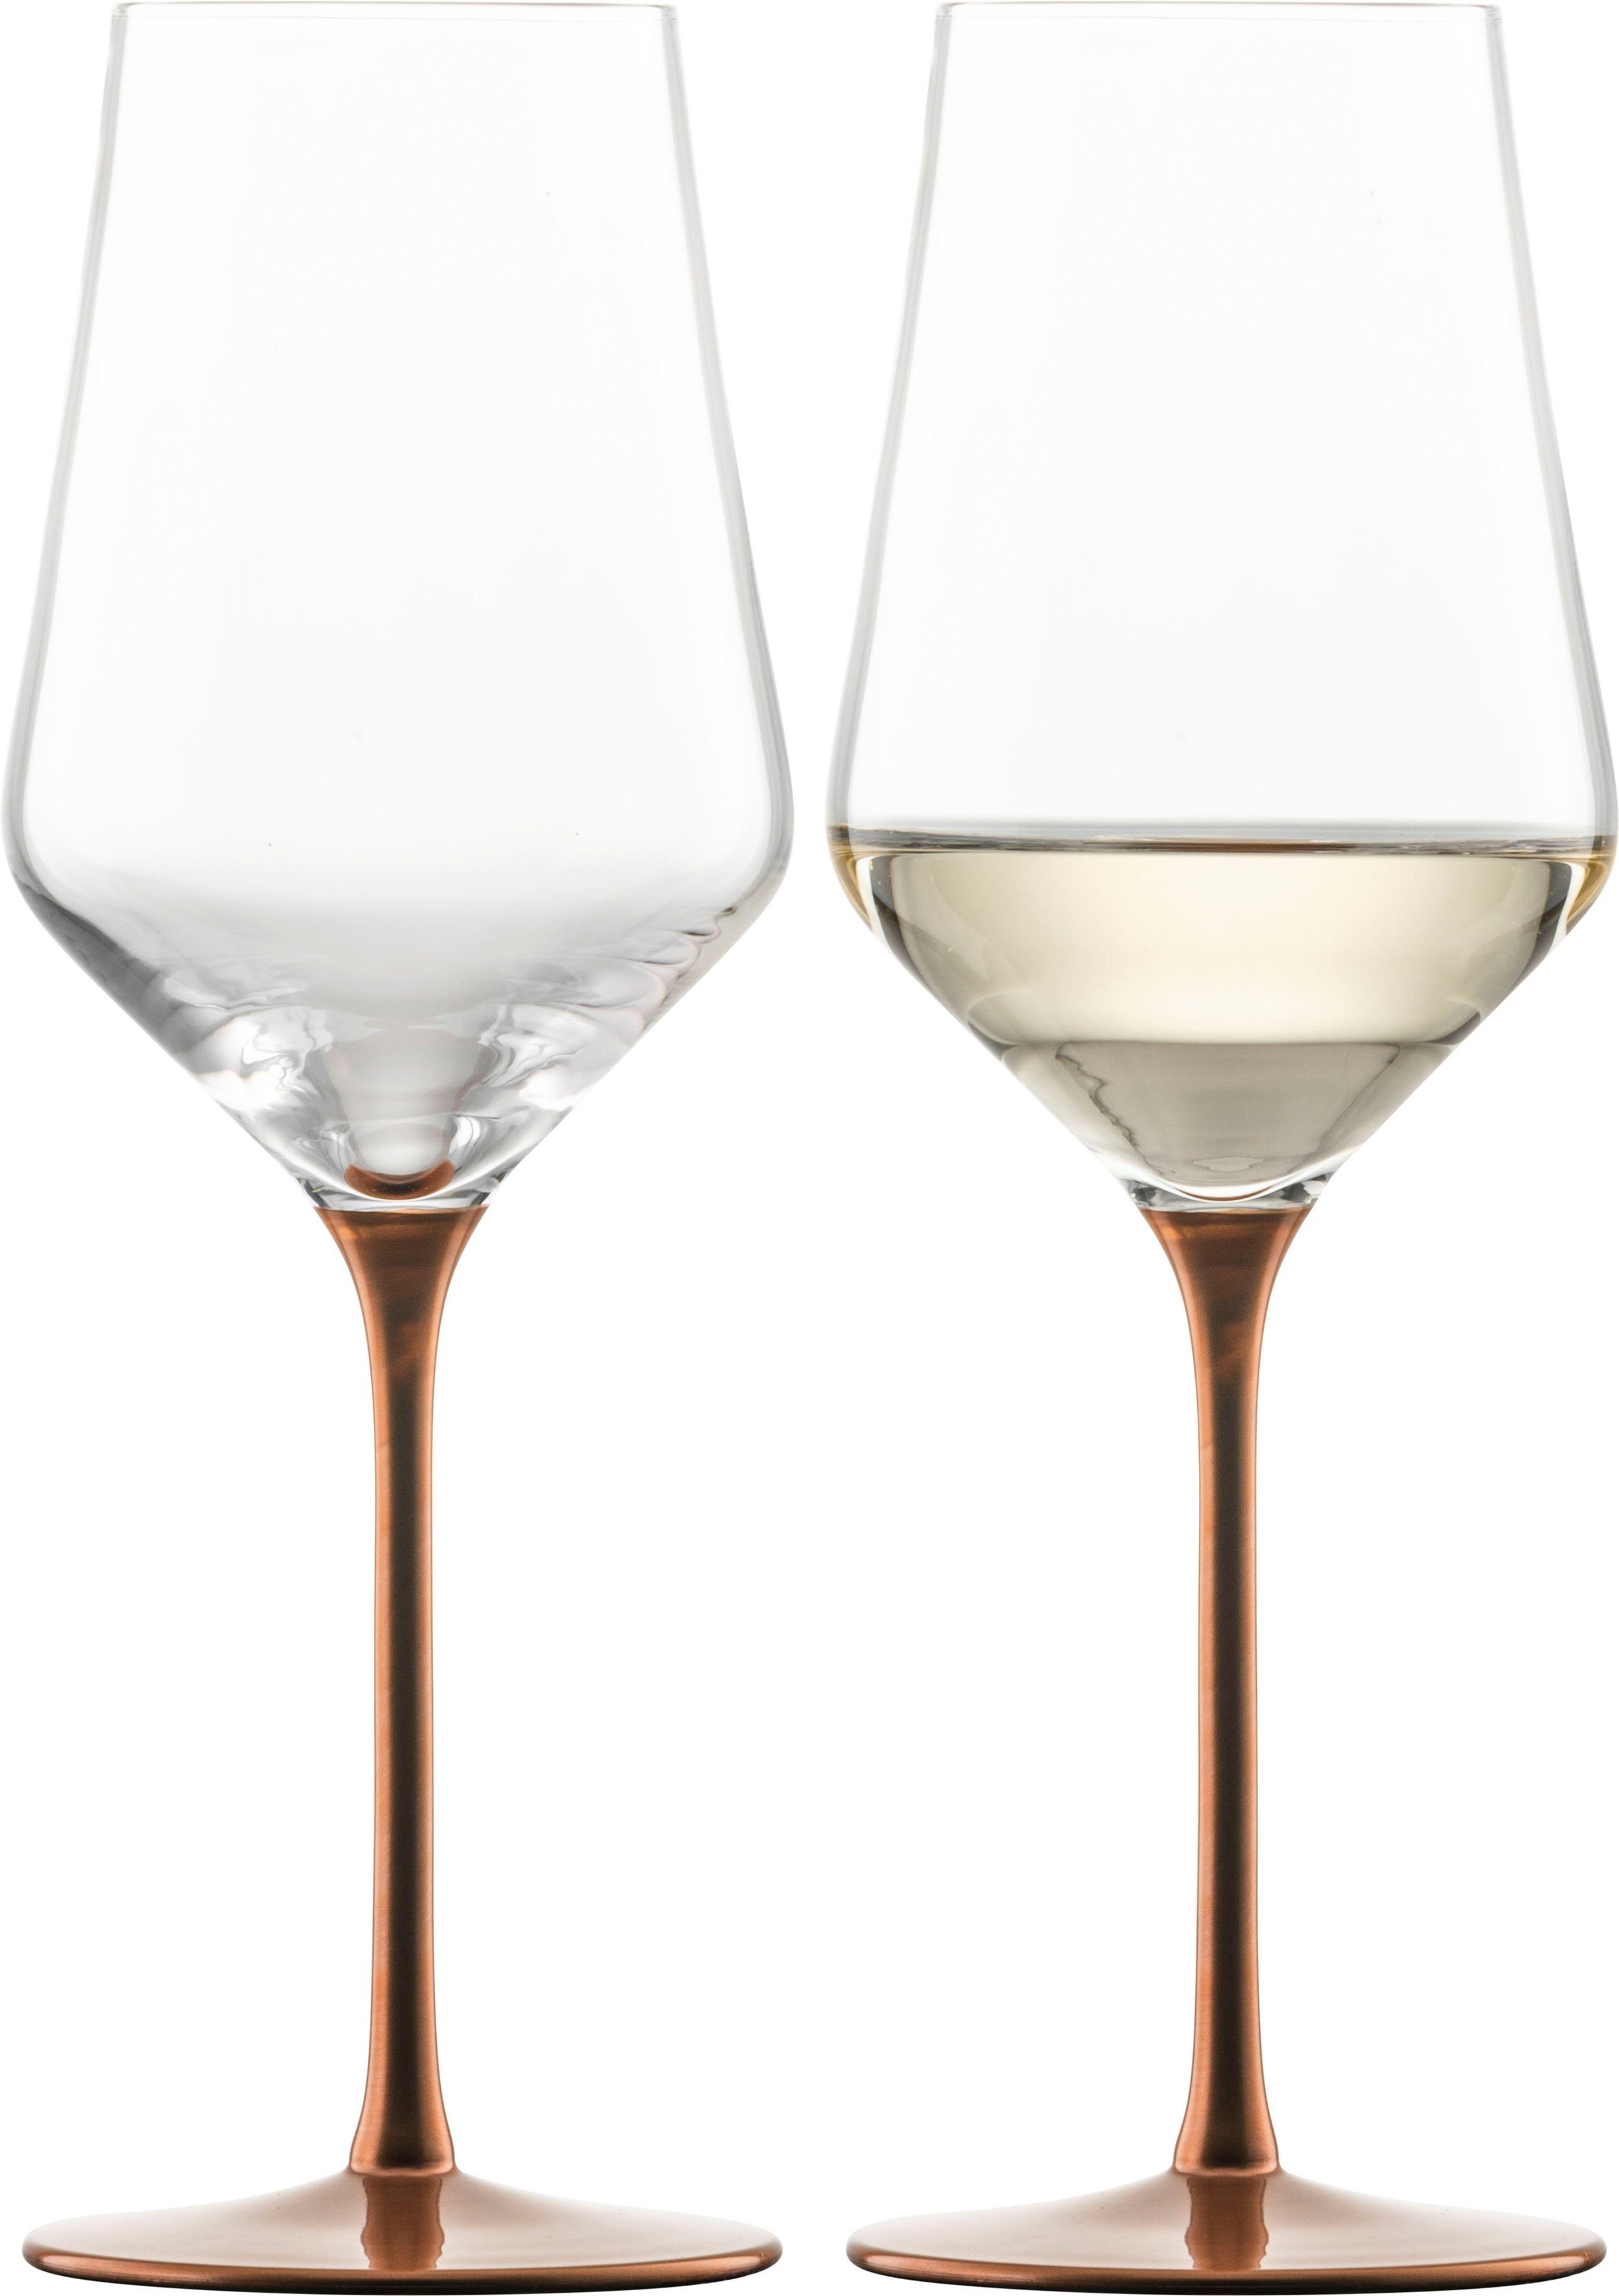 Handarbeit Kupfer-Glasur Kristallglas, Eisch schimmernden ml, Germany, fein in KAYA, Weißweinglas Made in mit 380 veredelt,